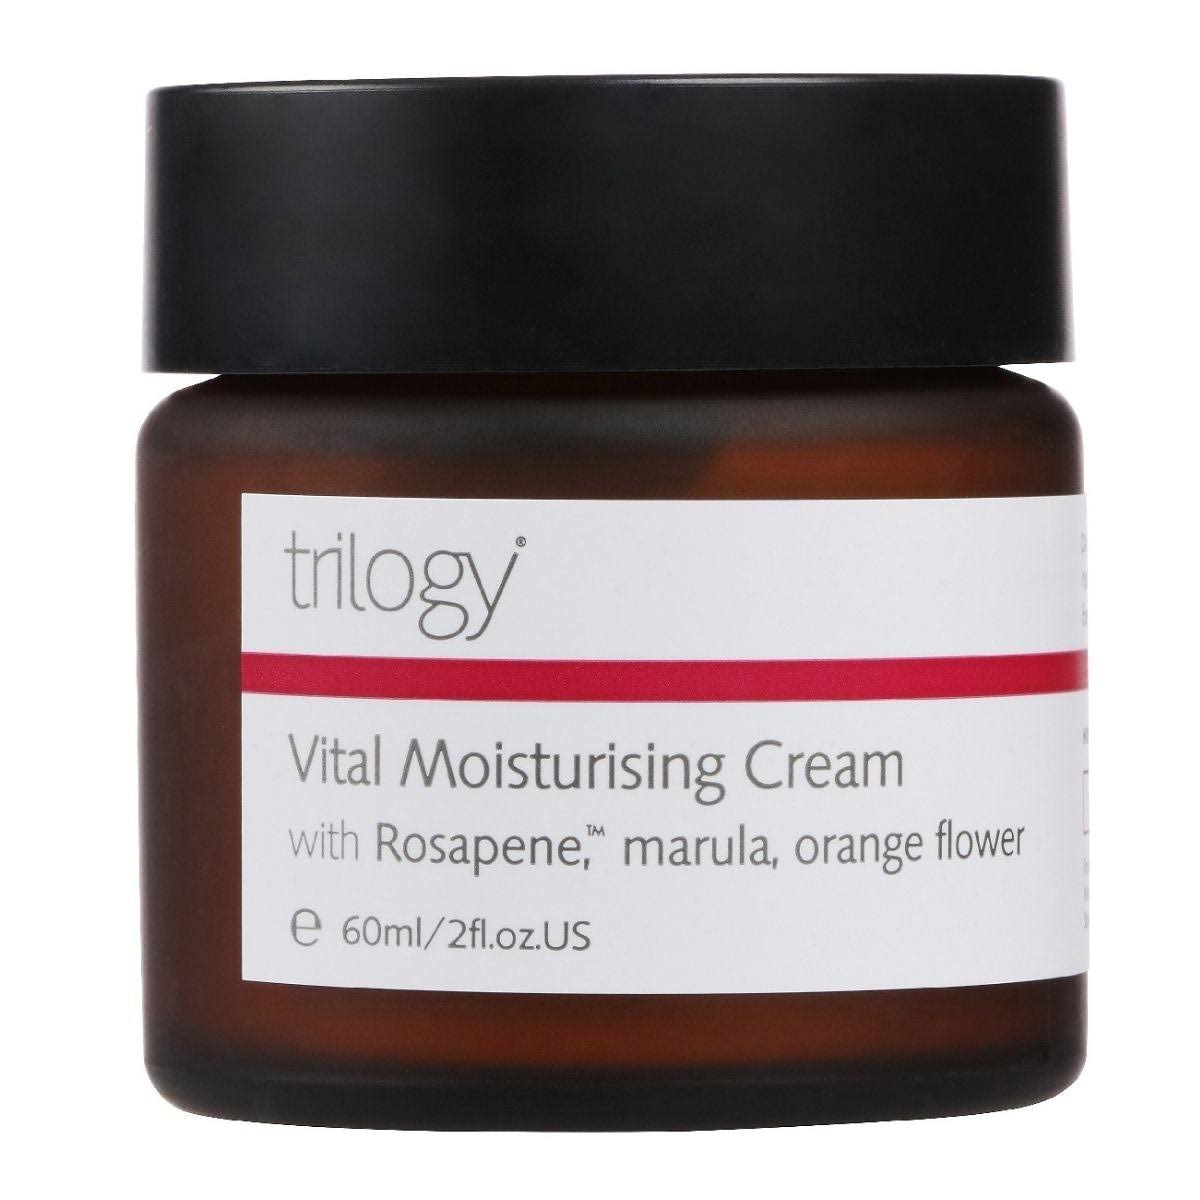 Trilogy Face Care Vital Moisturising Cream